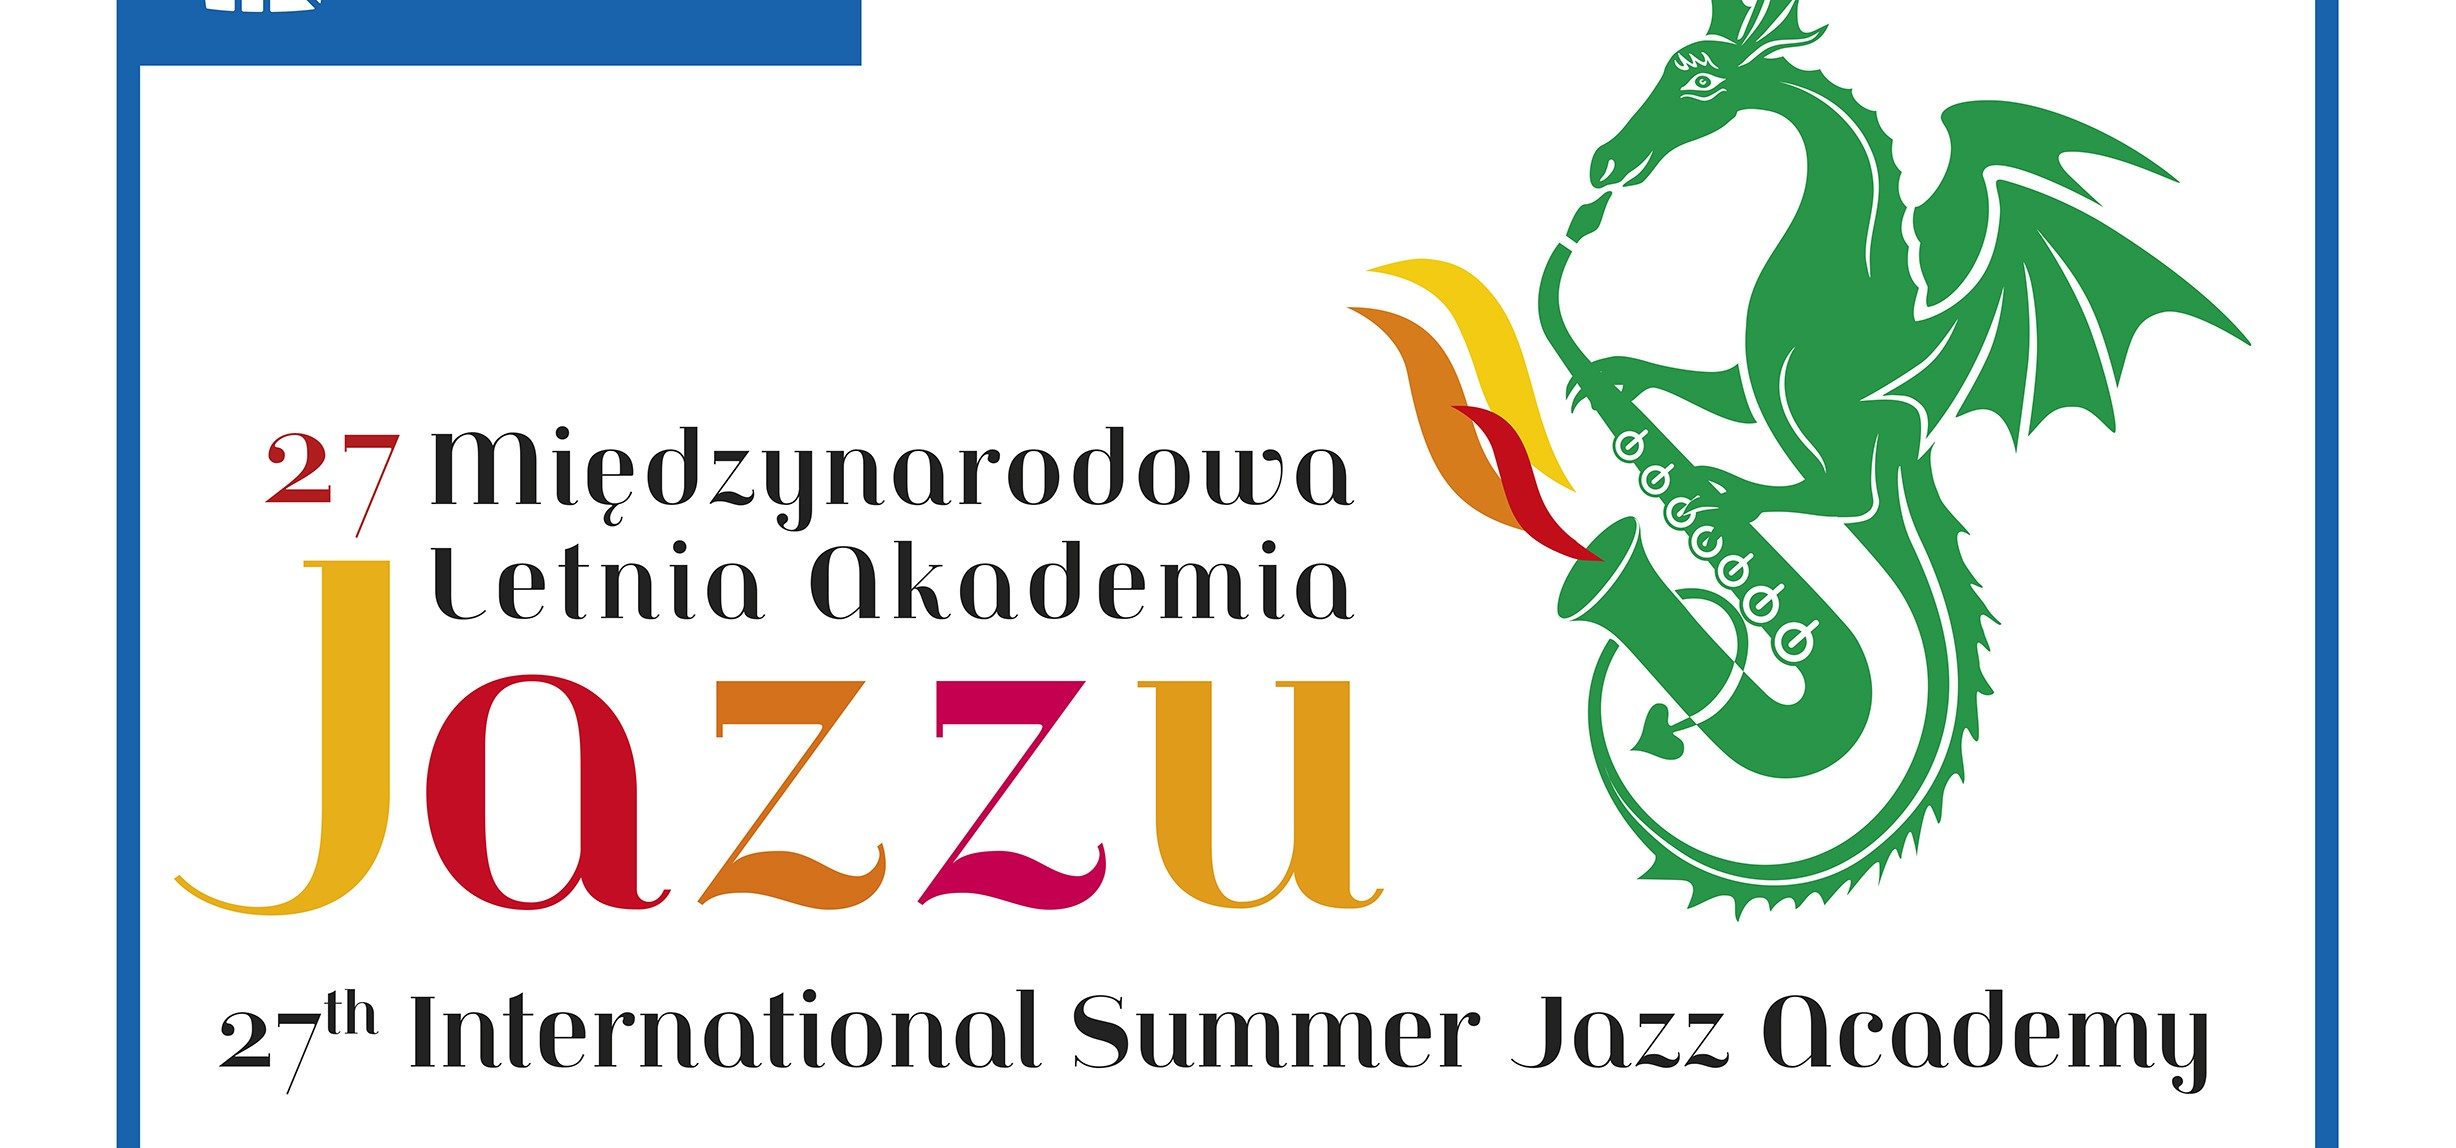 Międzynarodowa Letnia Akademia Jazzu w Krakowie